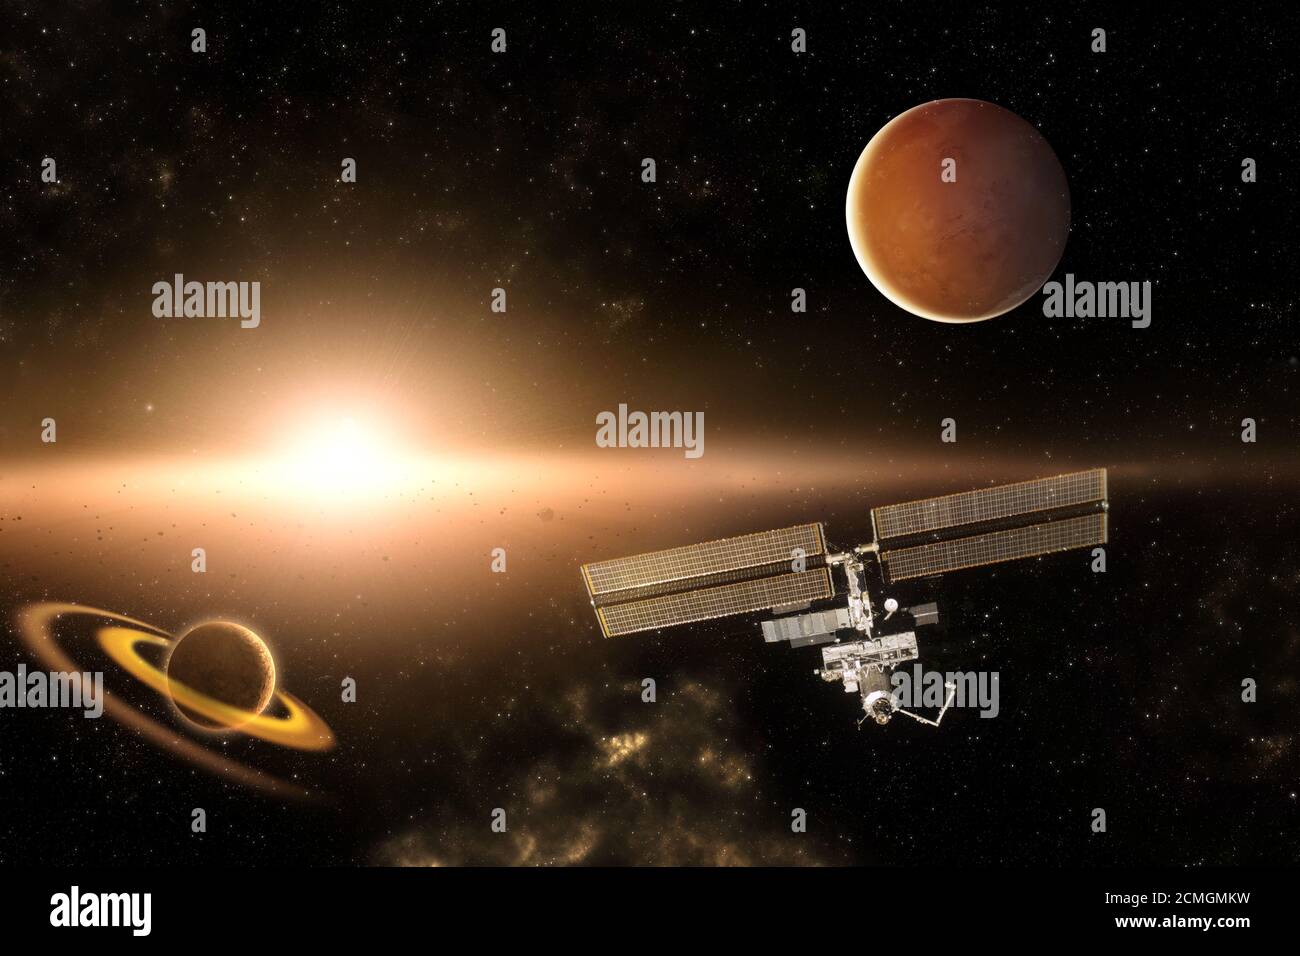 Missione esplorativa ISS negli elementi del sistema solare di questo Immagine fornita dalla NASA Foto Stock